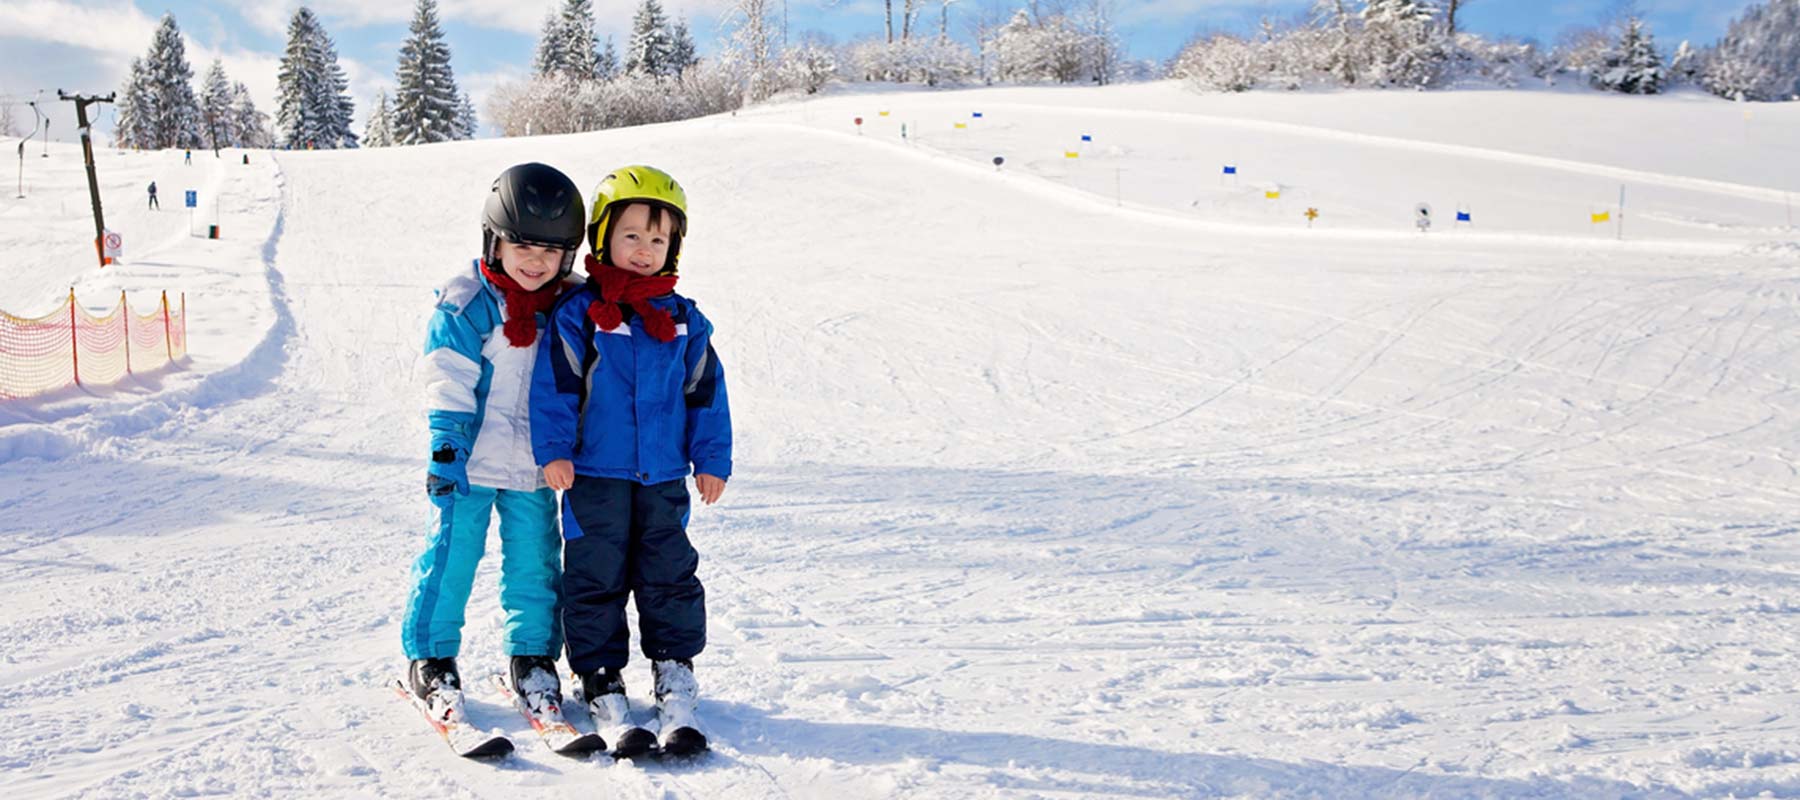 Les meilleures stations de ski # Pour les familles